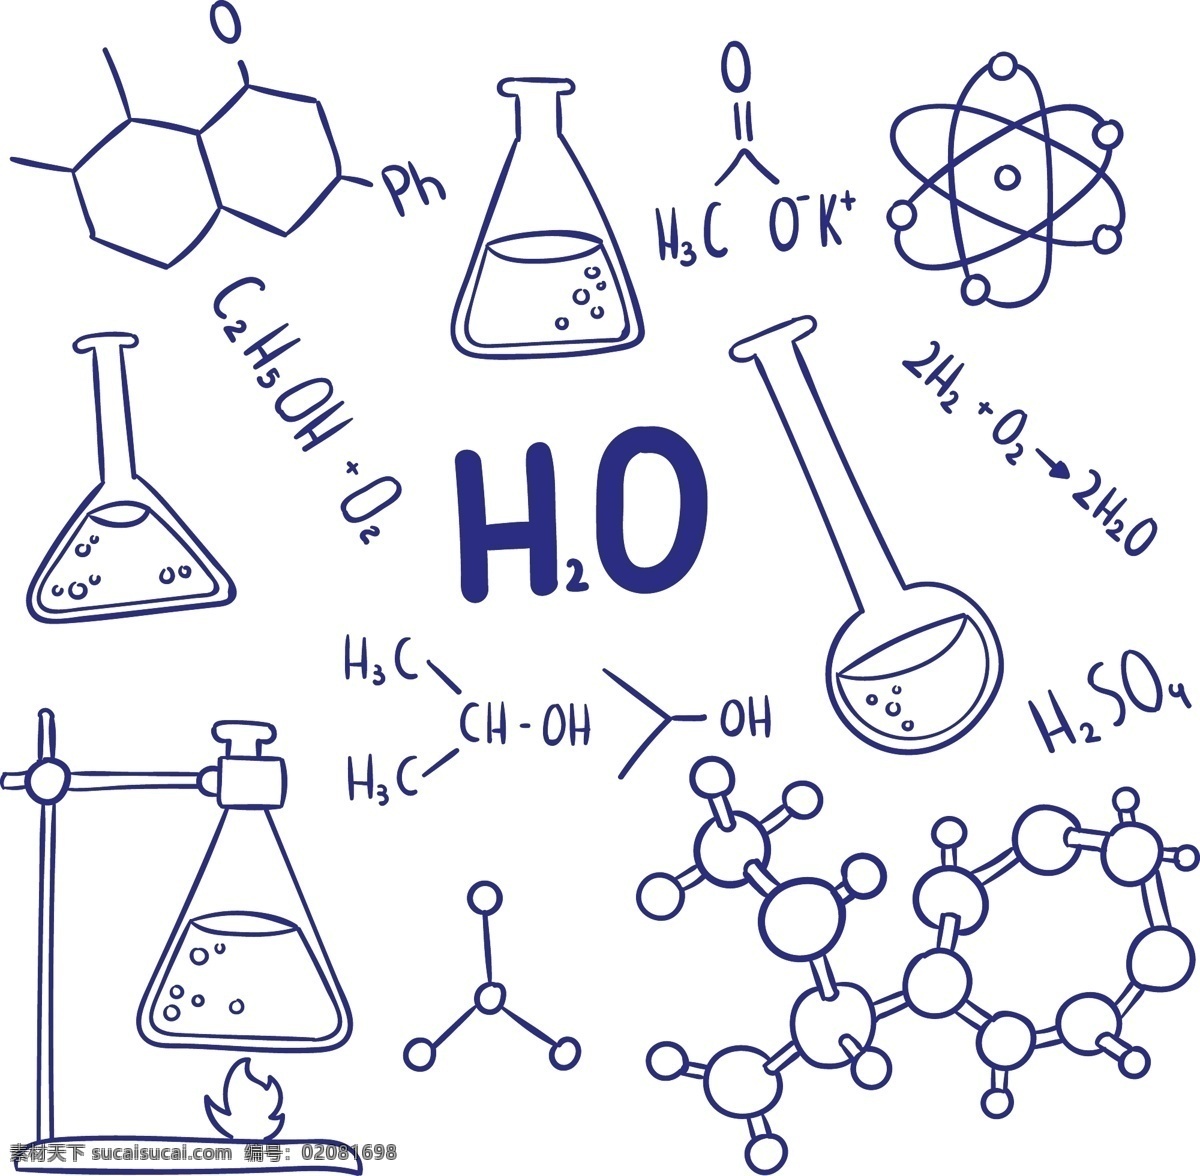 化学元素 化学符号 元素 化学图标 化学容器 卡通化学图标